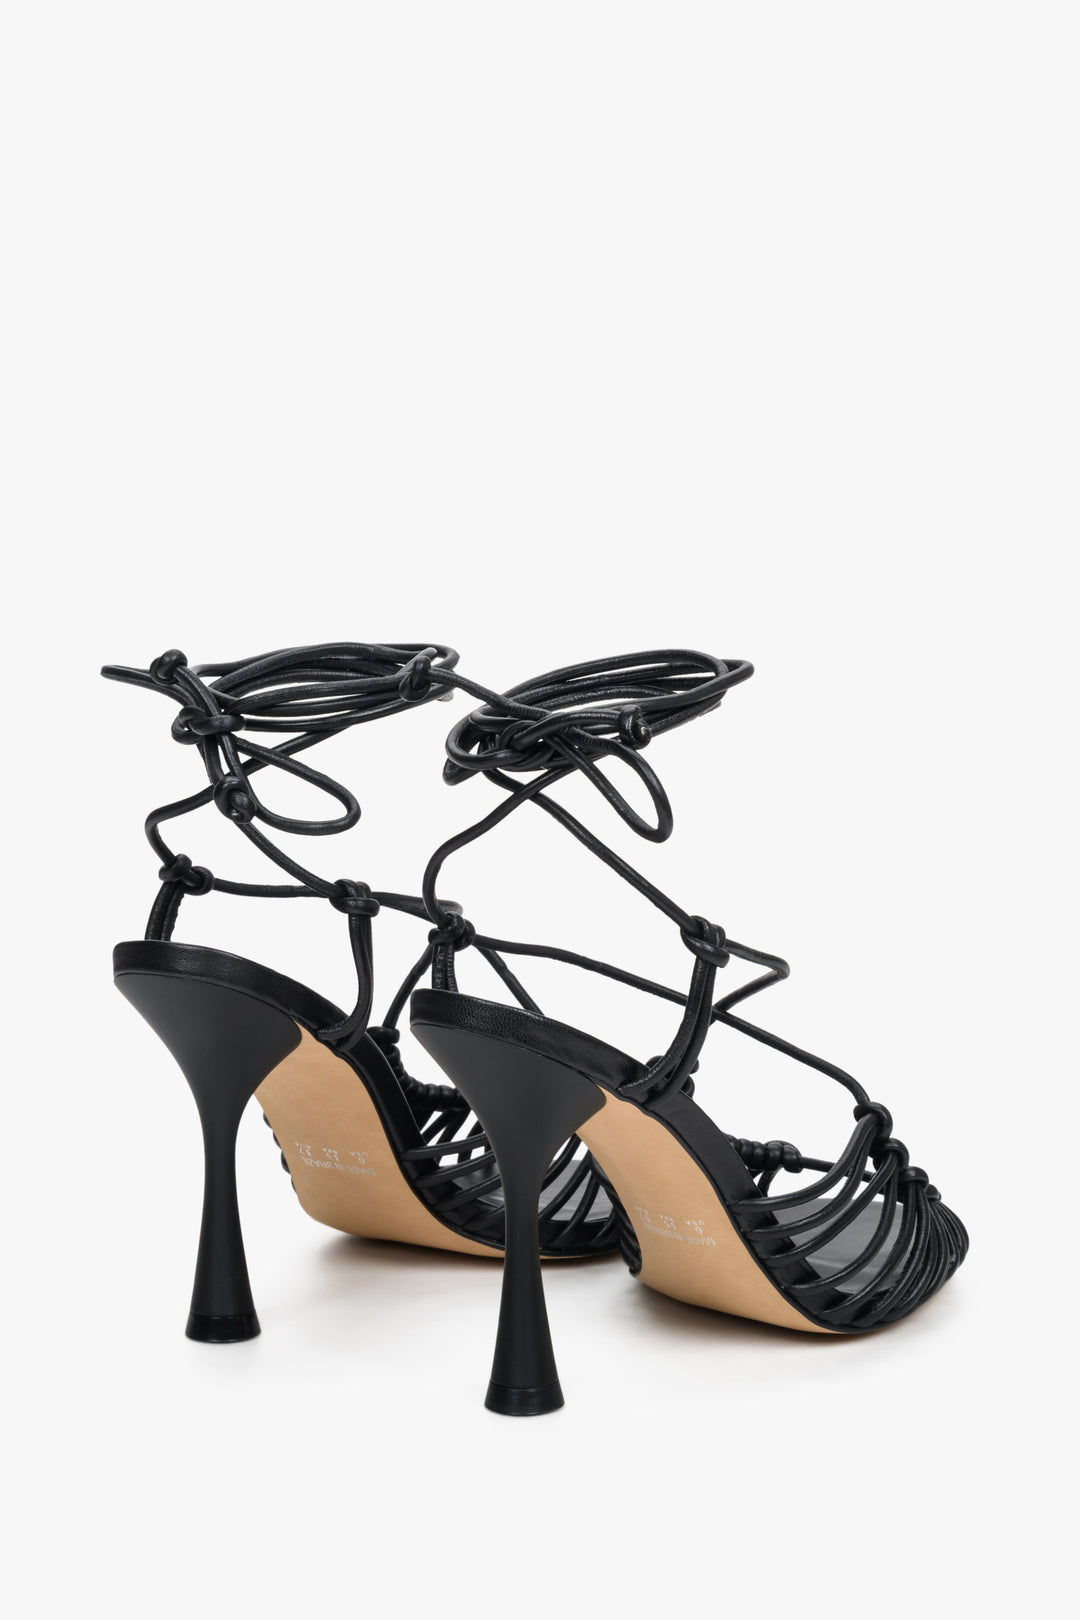 Czarne, wiązane, plecione sandały damskie na szpilce Estro - zbliżenie na tył buta.